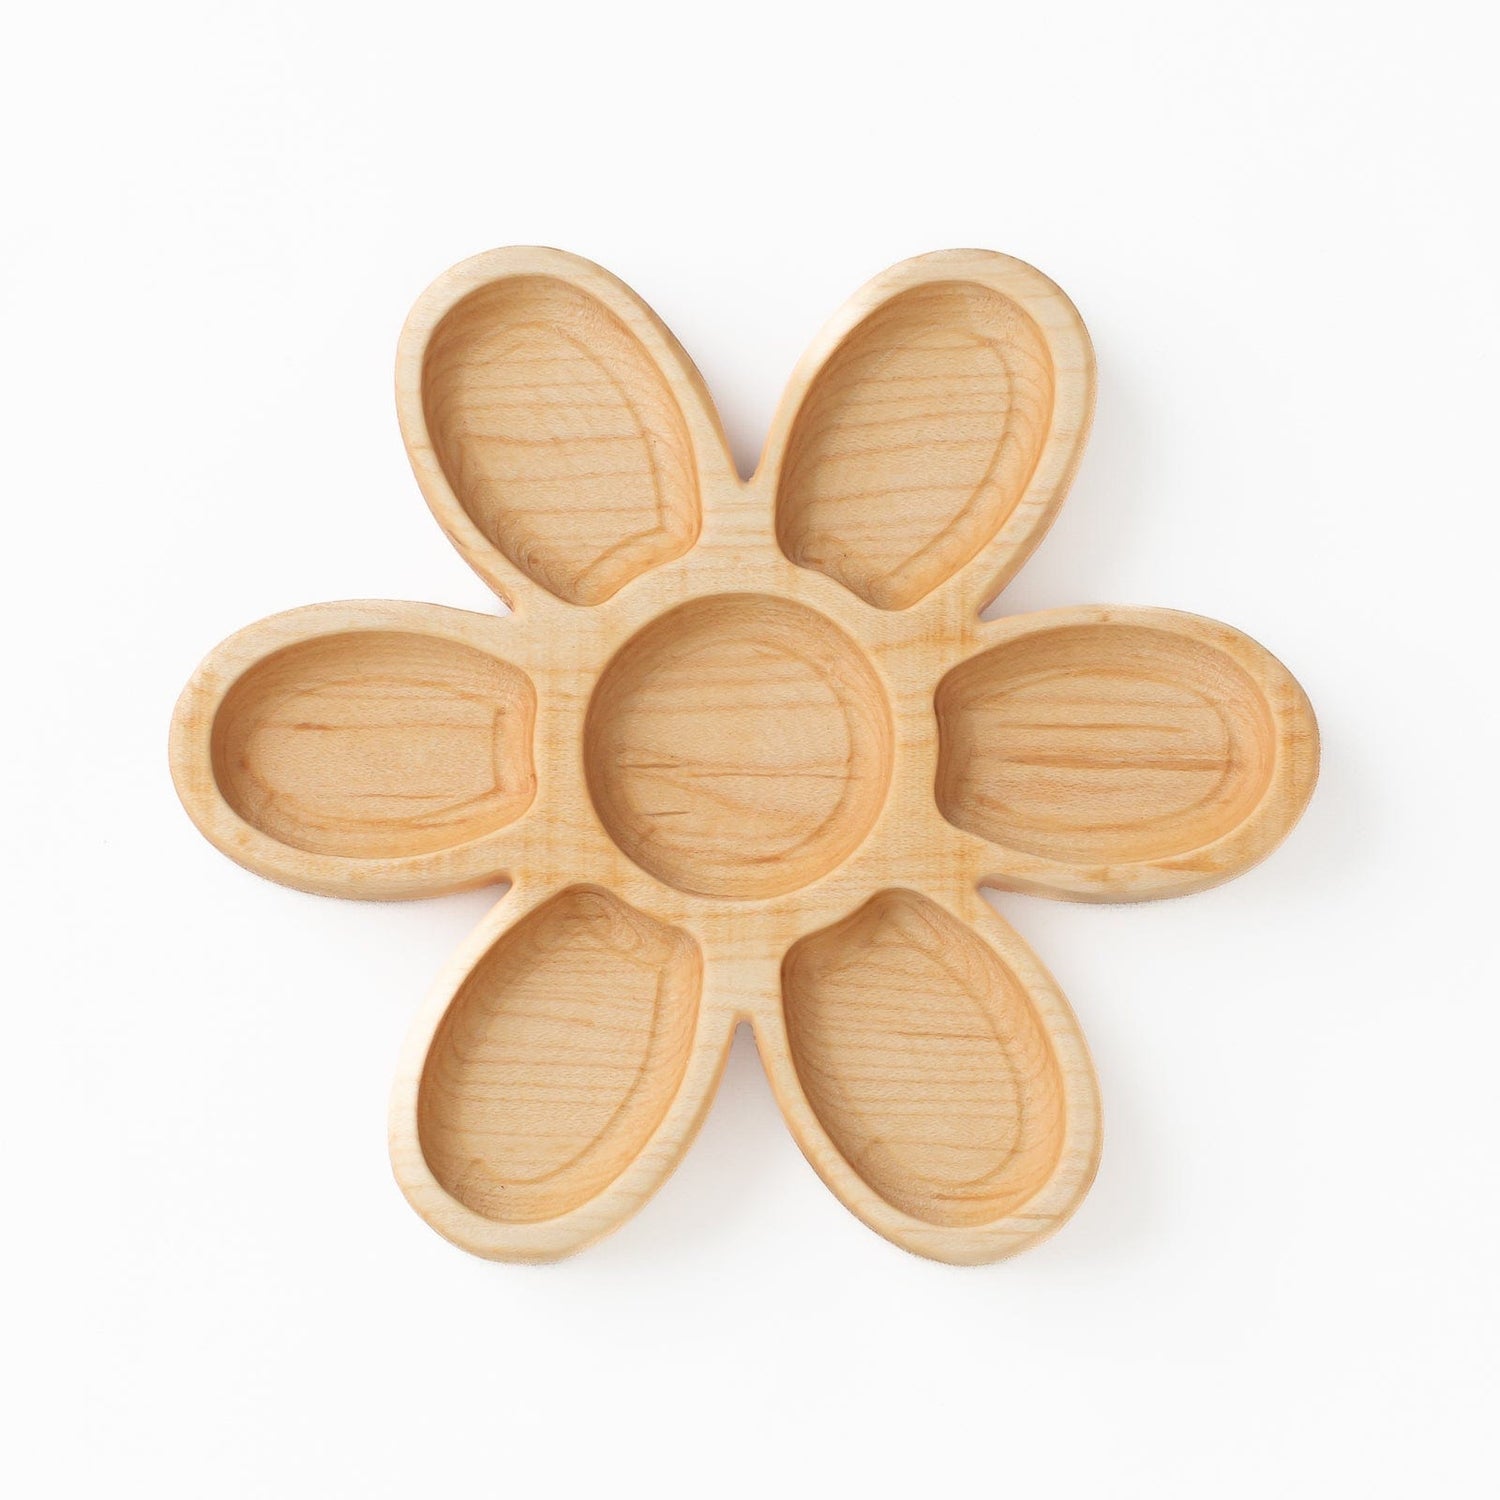 Aw & Co. Sensory Play Wooden Daisy Plate / Sensory Tray (Made in Canada)